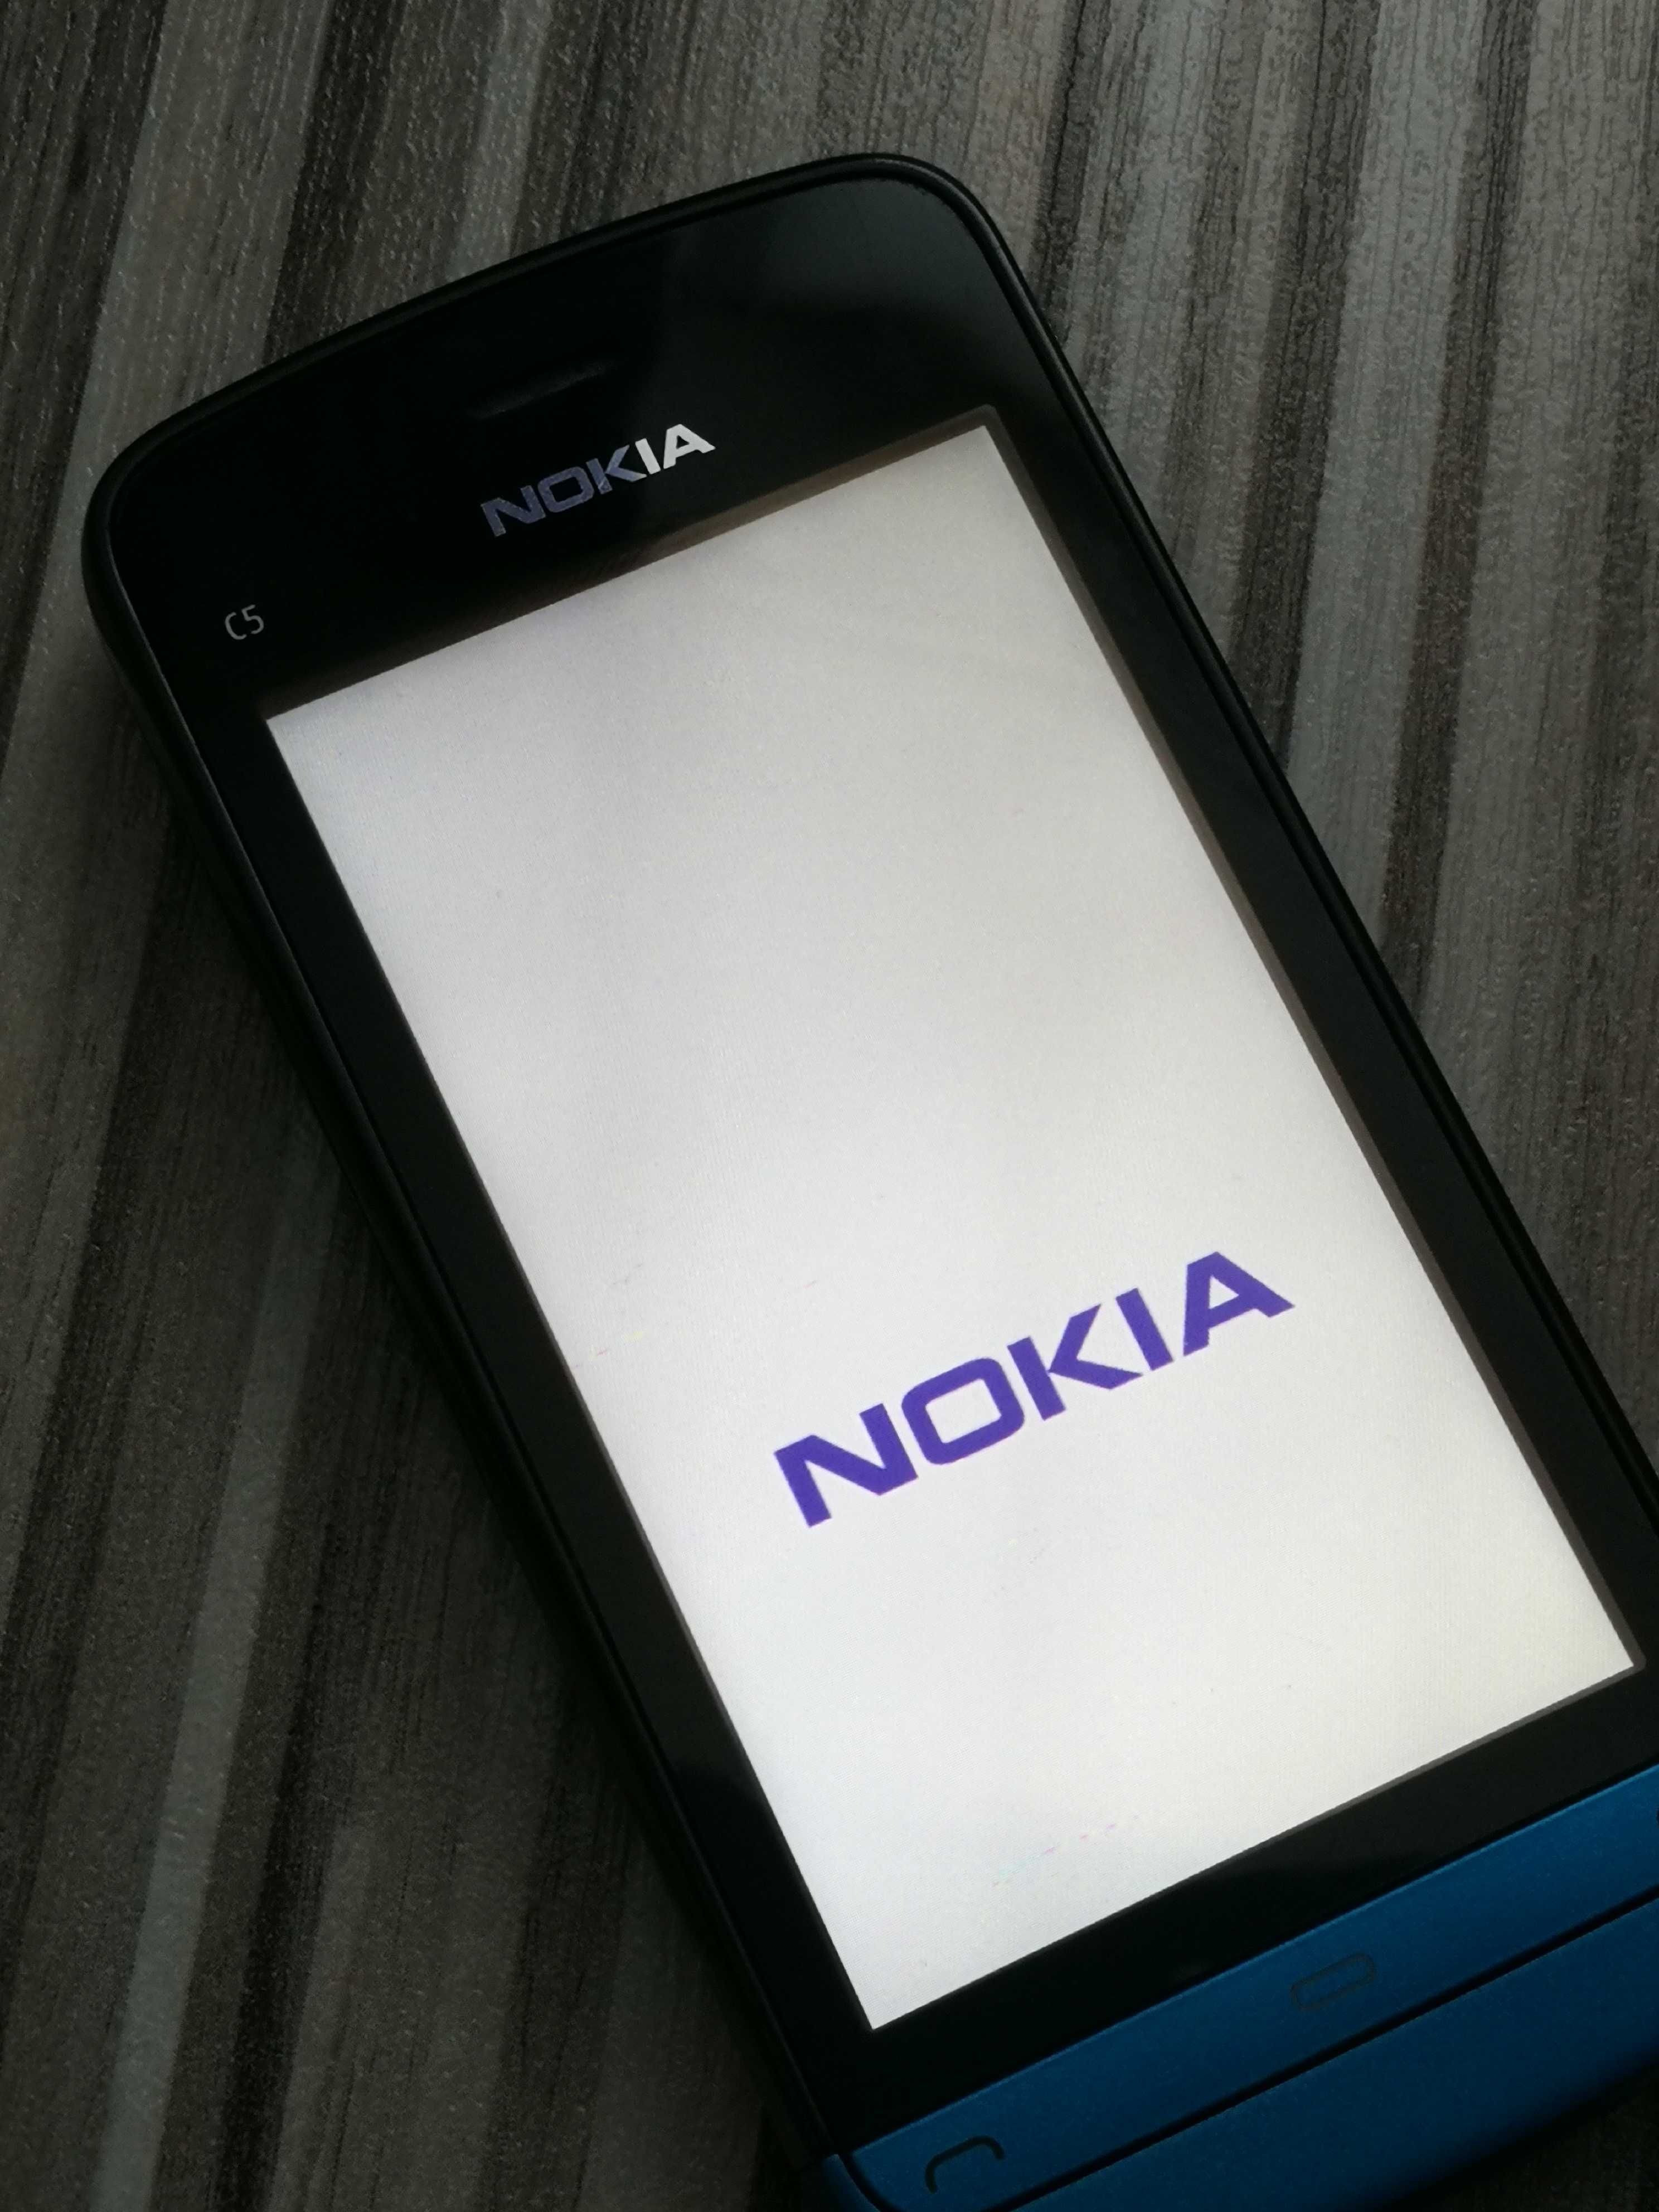 Vand Nokia C5-03